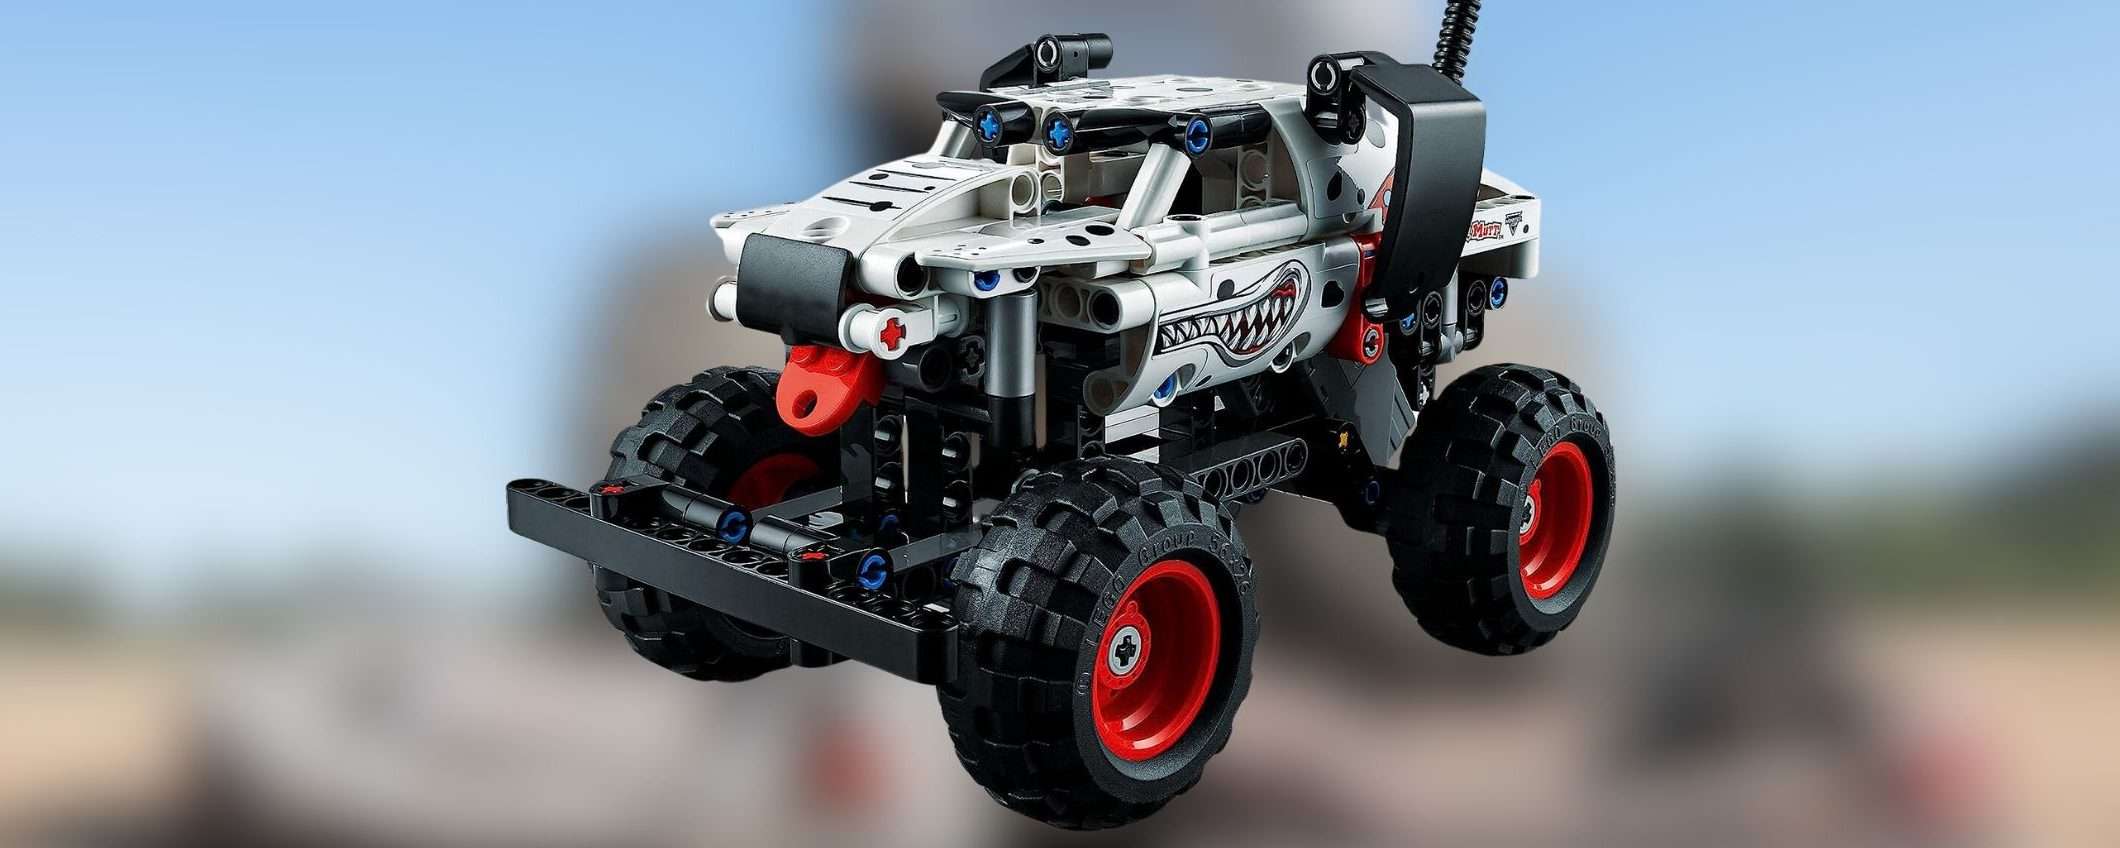 LEGO Technic Monster Jam: a meno di 20 euro farà impazzire i bambini